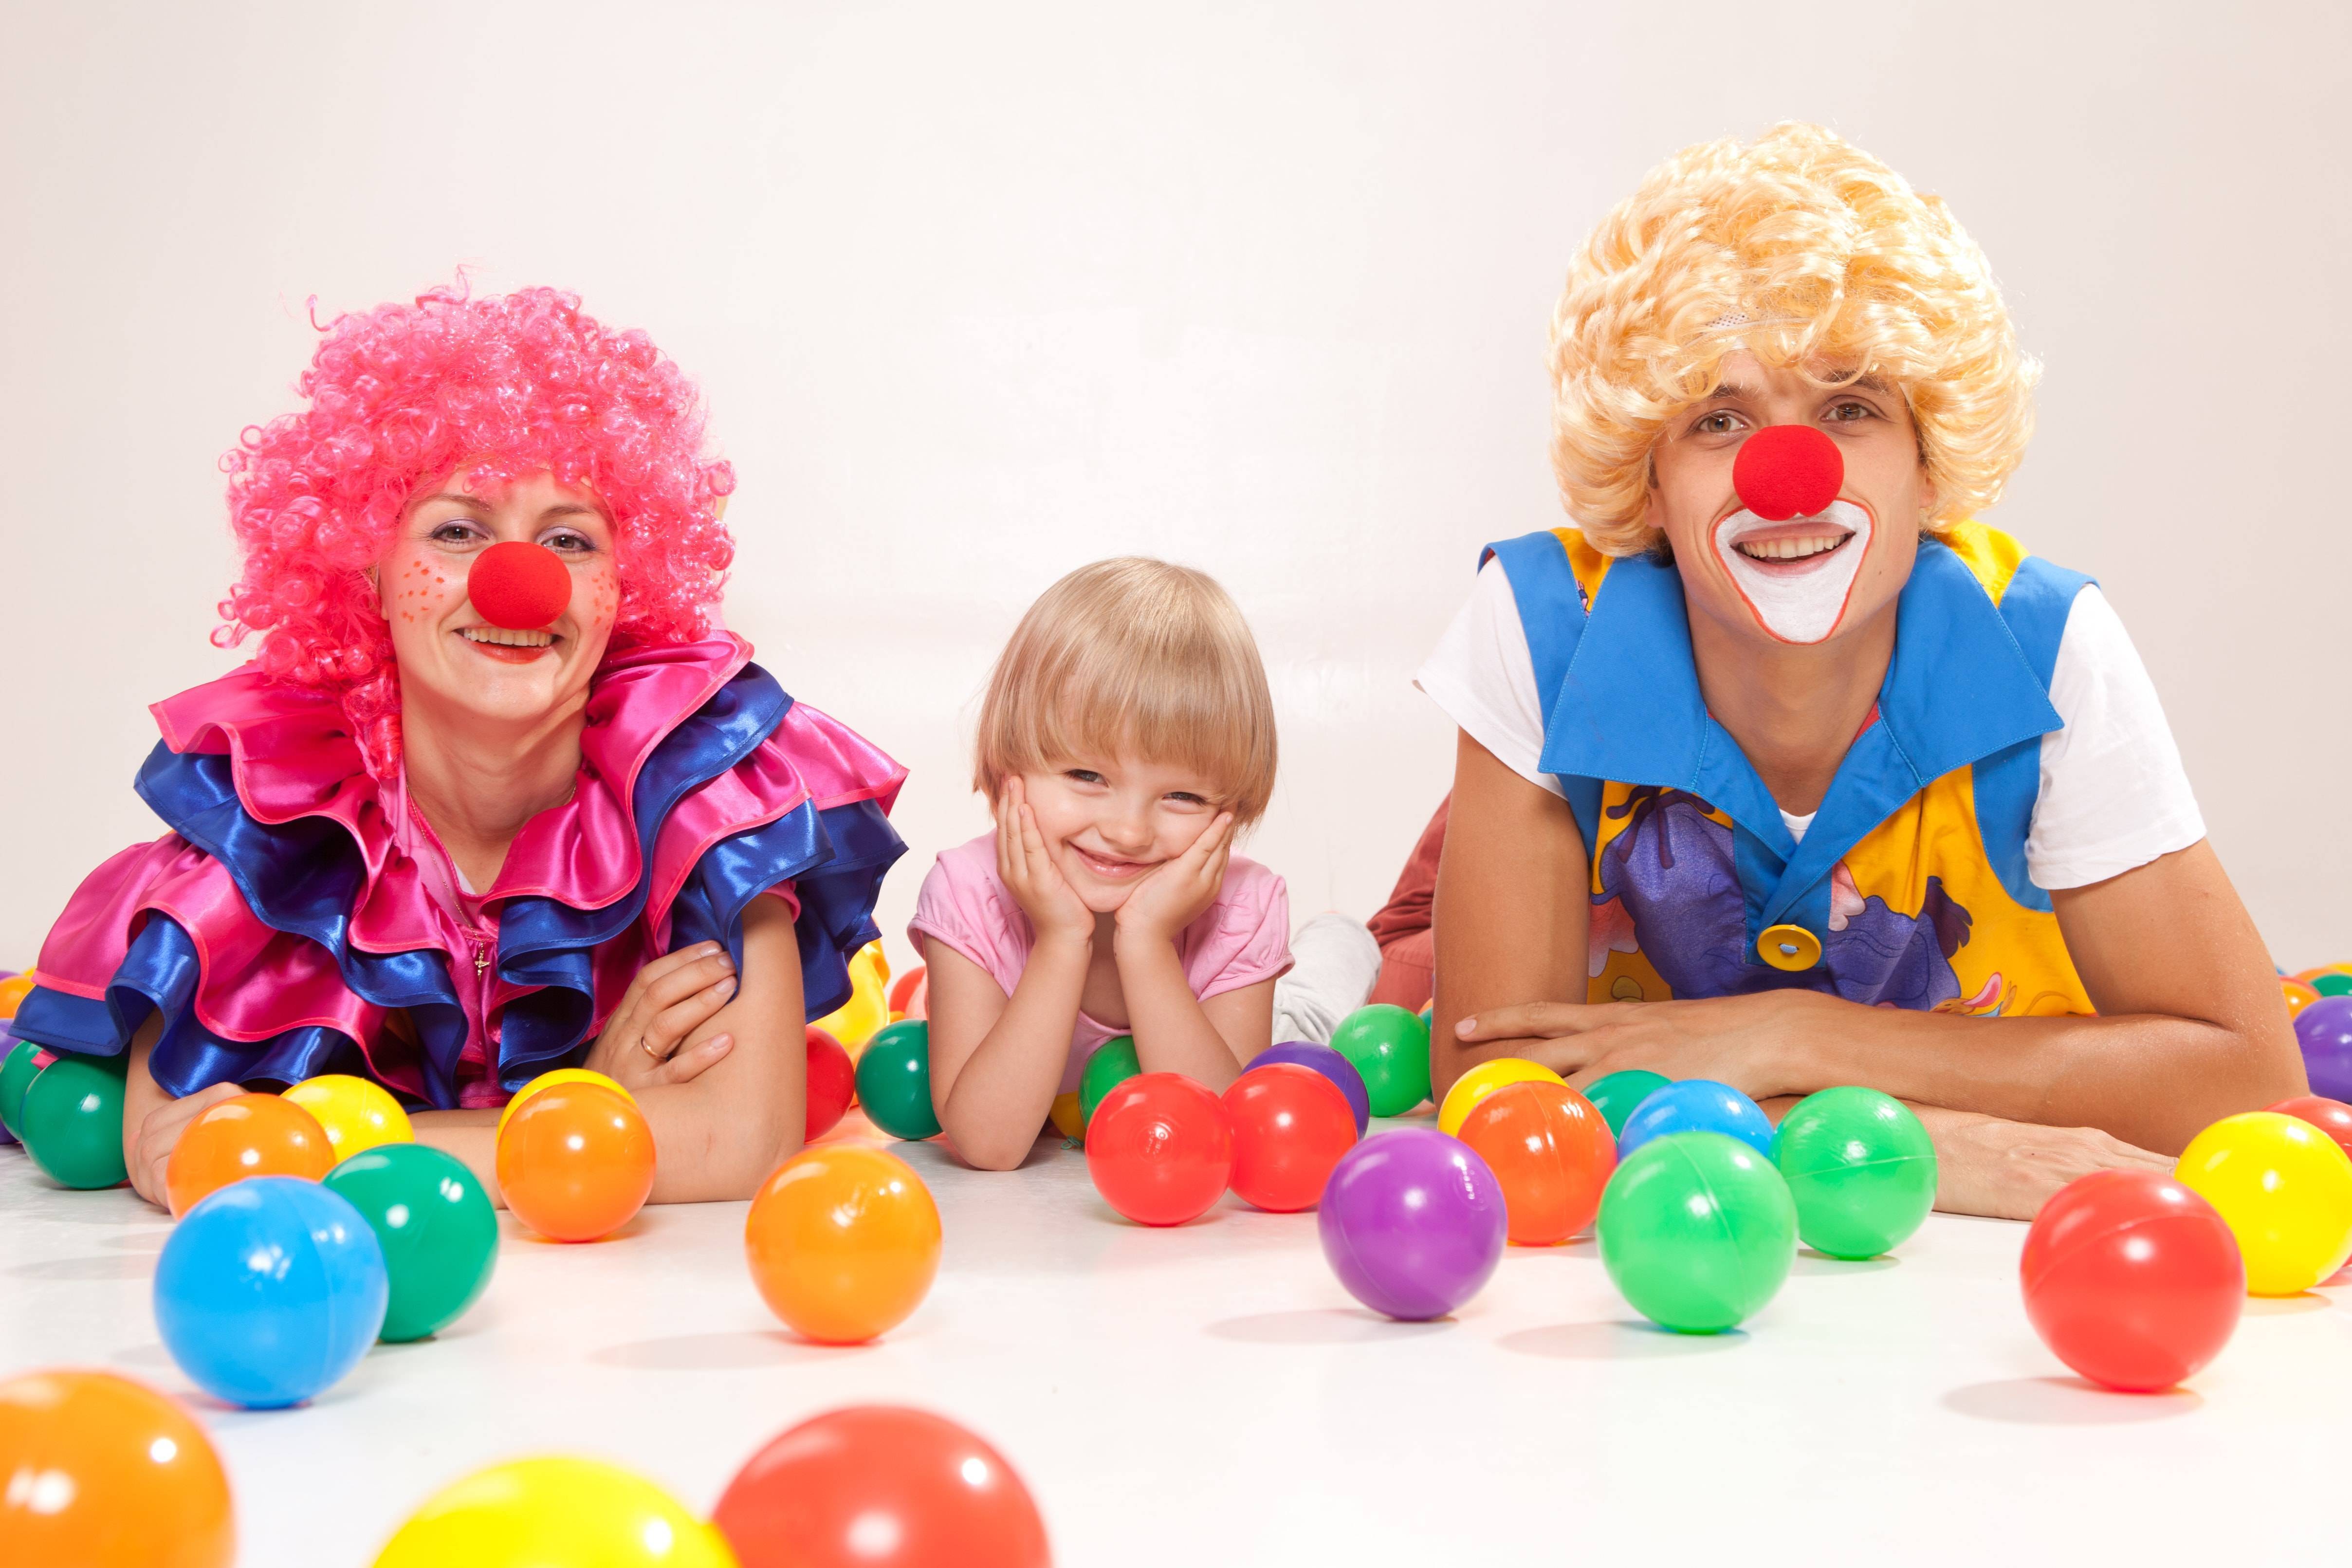 Клоун на день рождения ребенка — подарите малышу незабываемый праздник